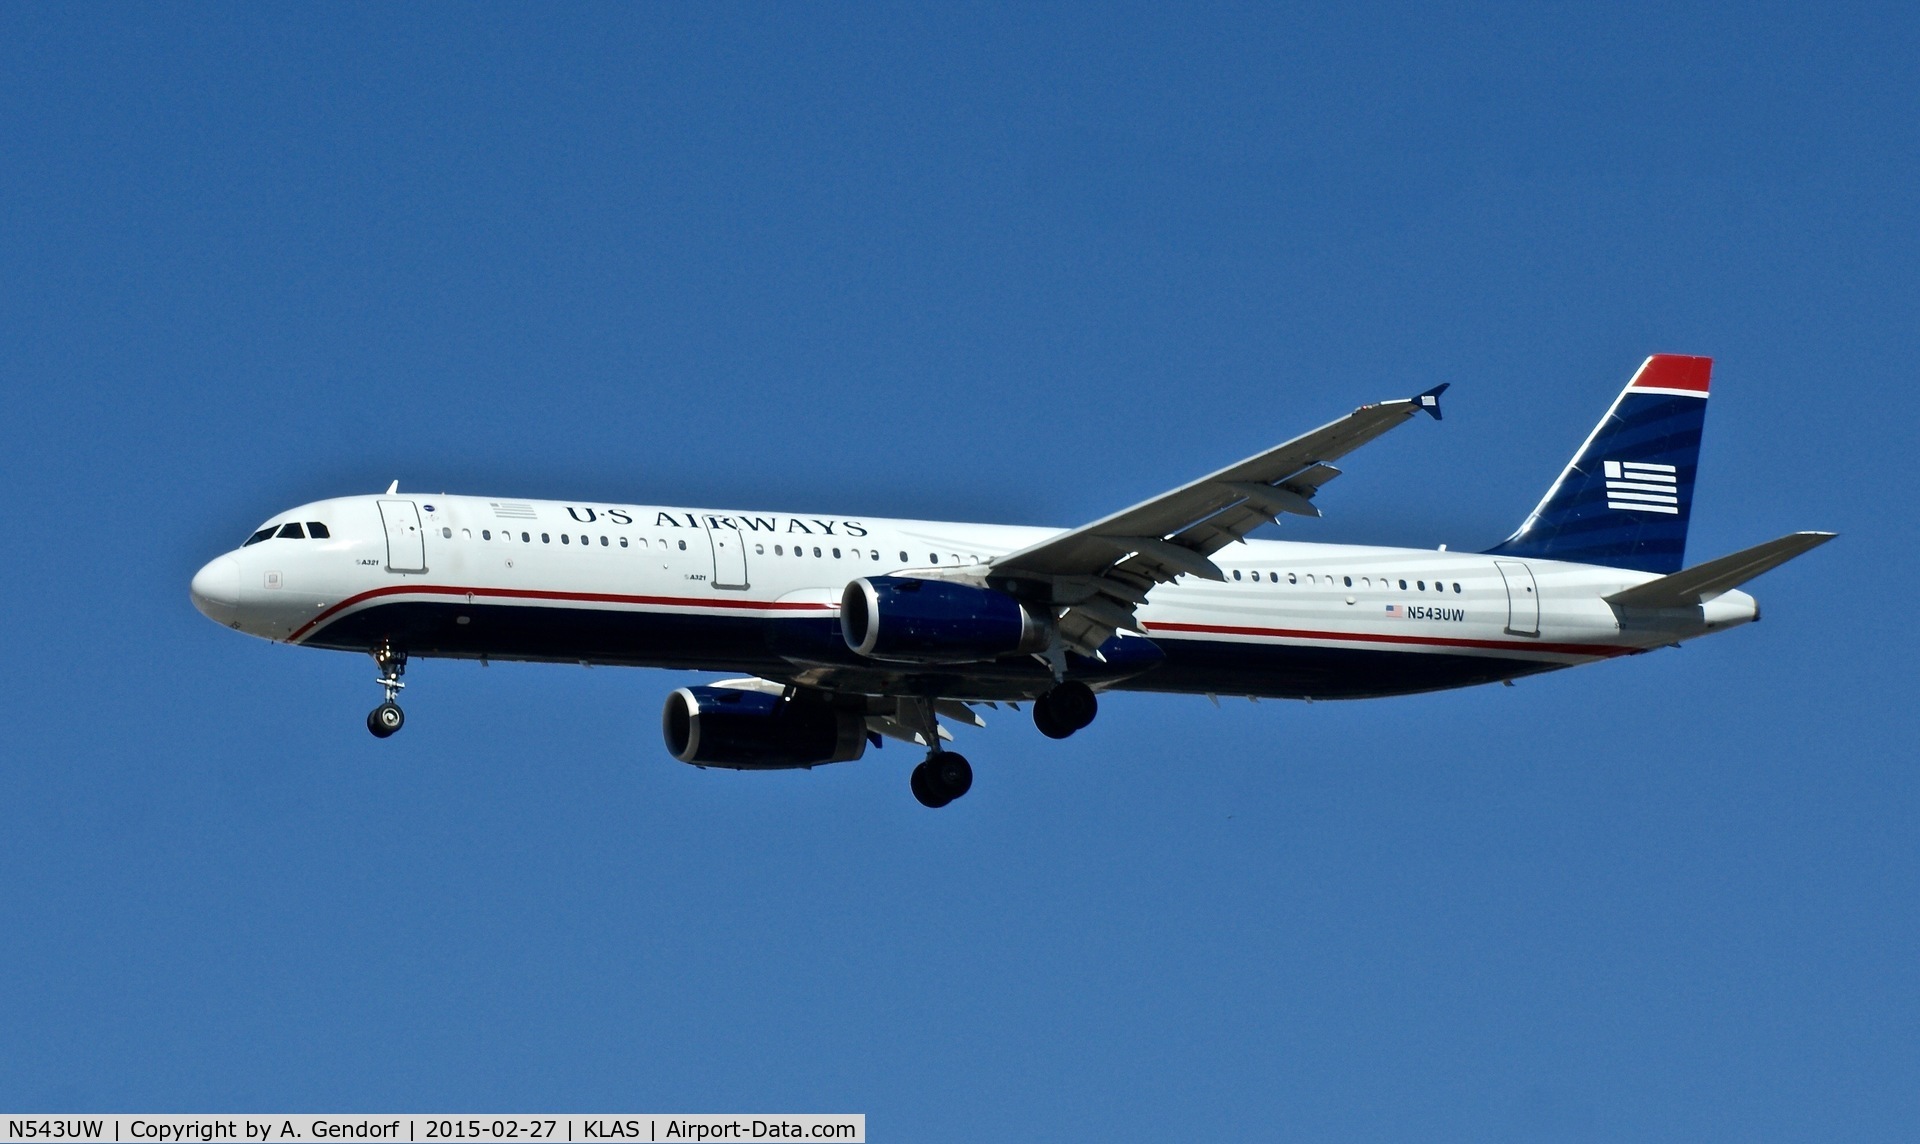 N543UW, 2011 Airbus A321-231 C/N 4843, US Airways, is here on short finals at Las Vegas Int'l(KLAS)